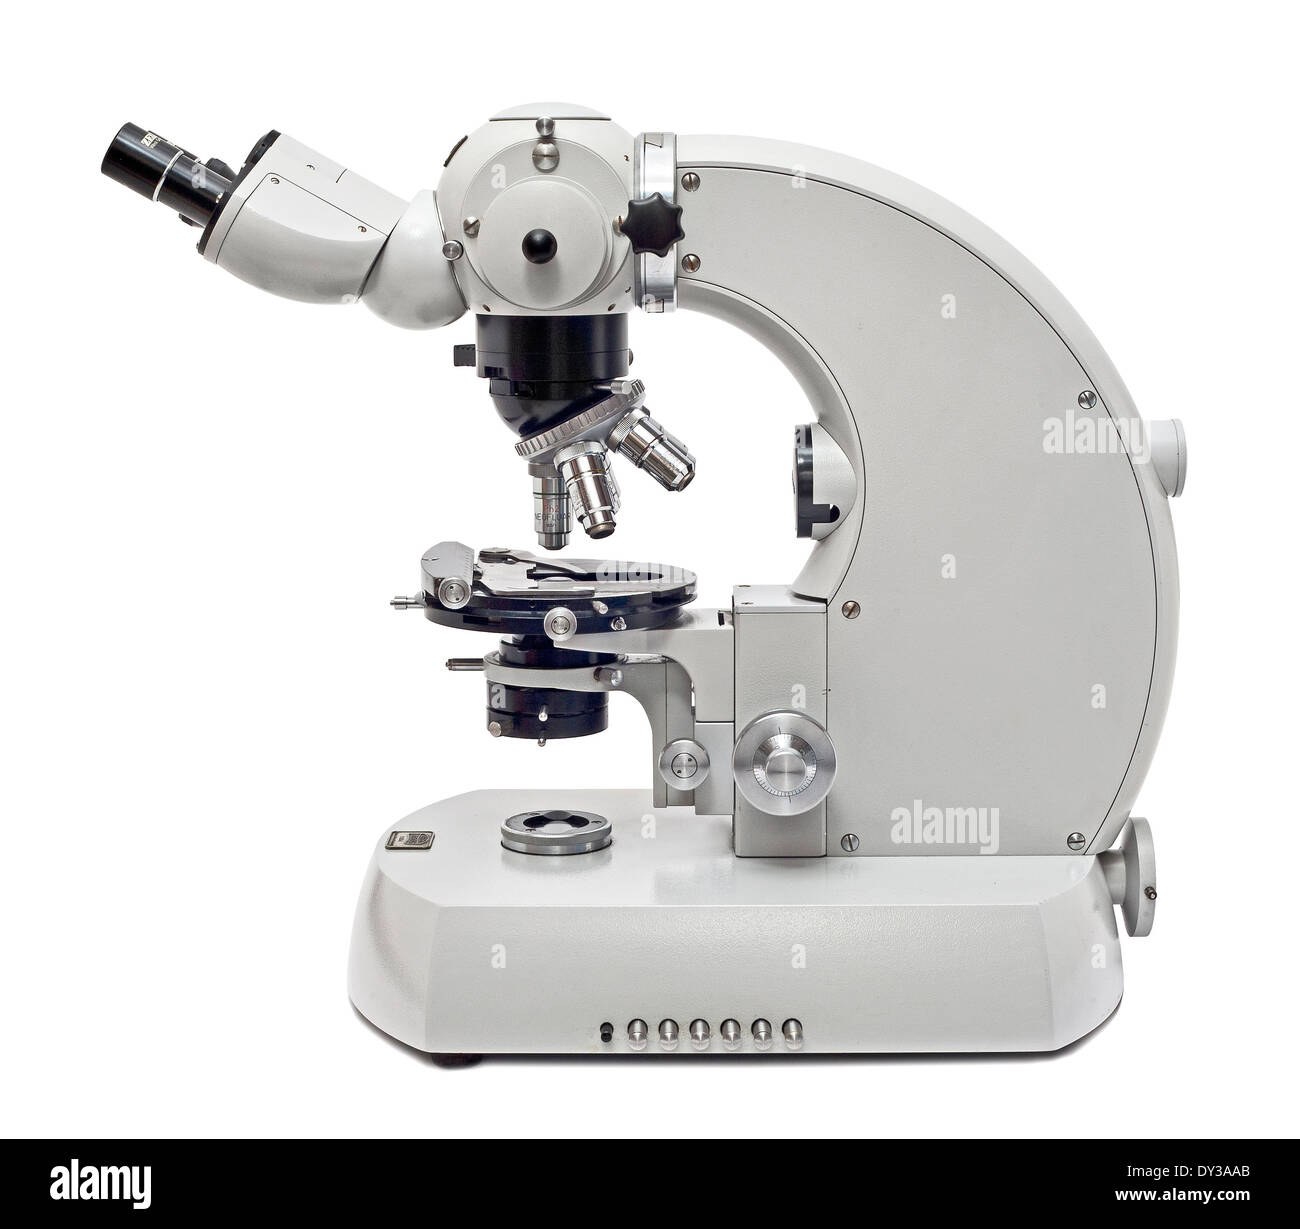 Zeiss microscope immagini e fotografie stock ad alta risoluzione - Alamy